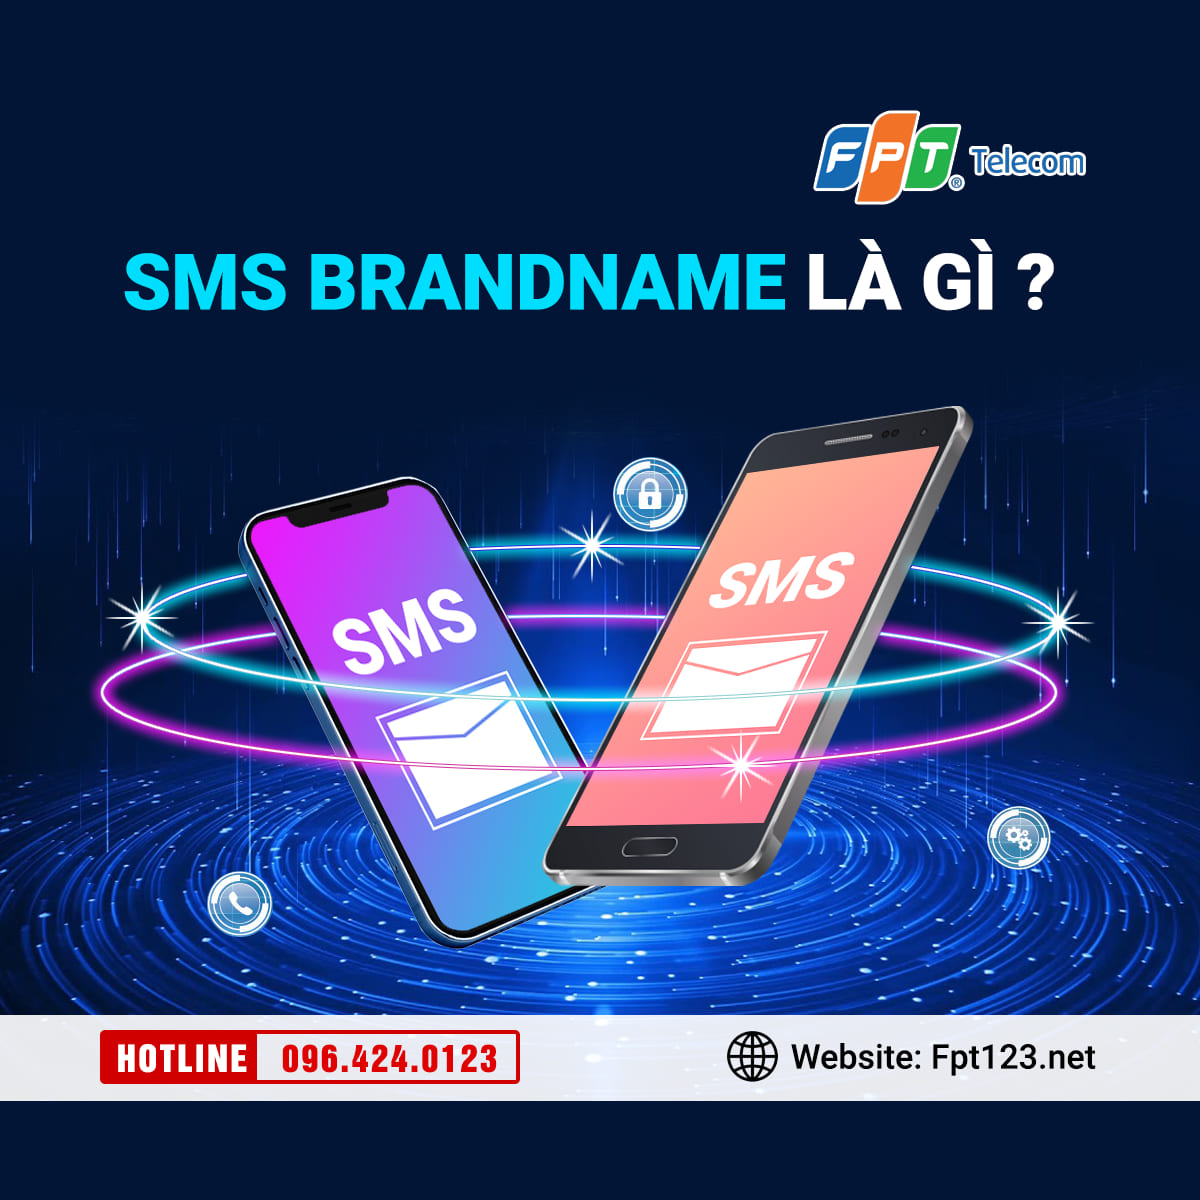 SMS Brandname là gì? Thủ tục và chi phí đăng ký ban đầu?